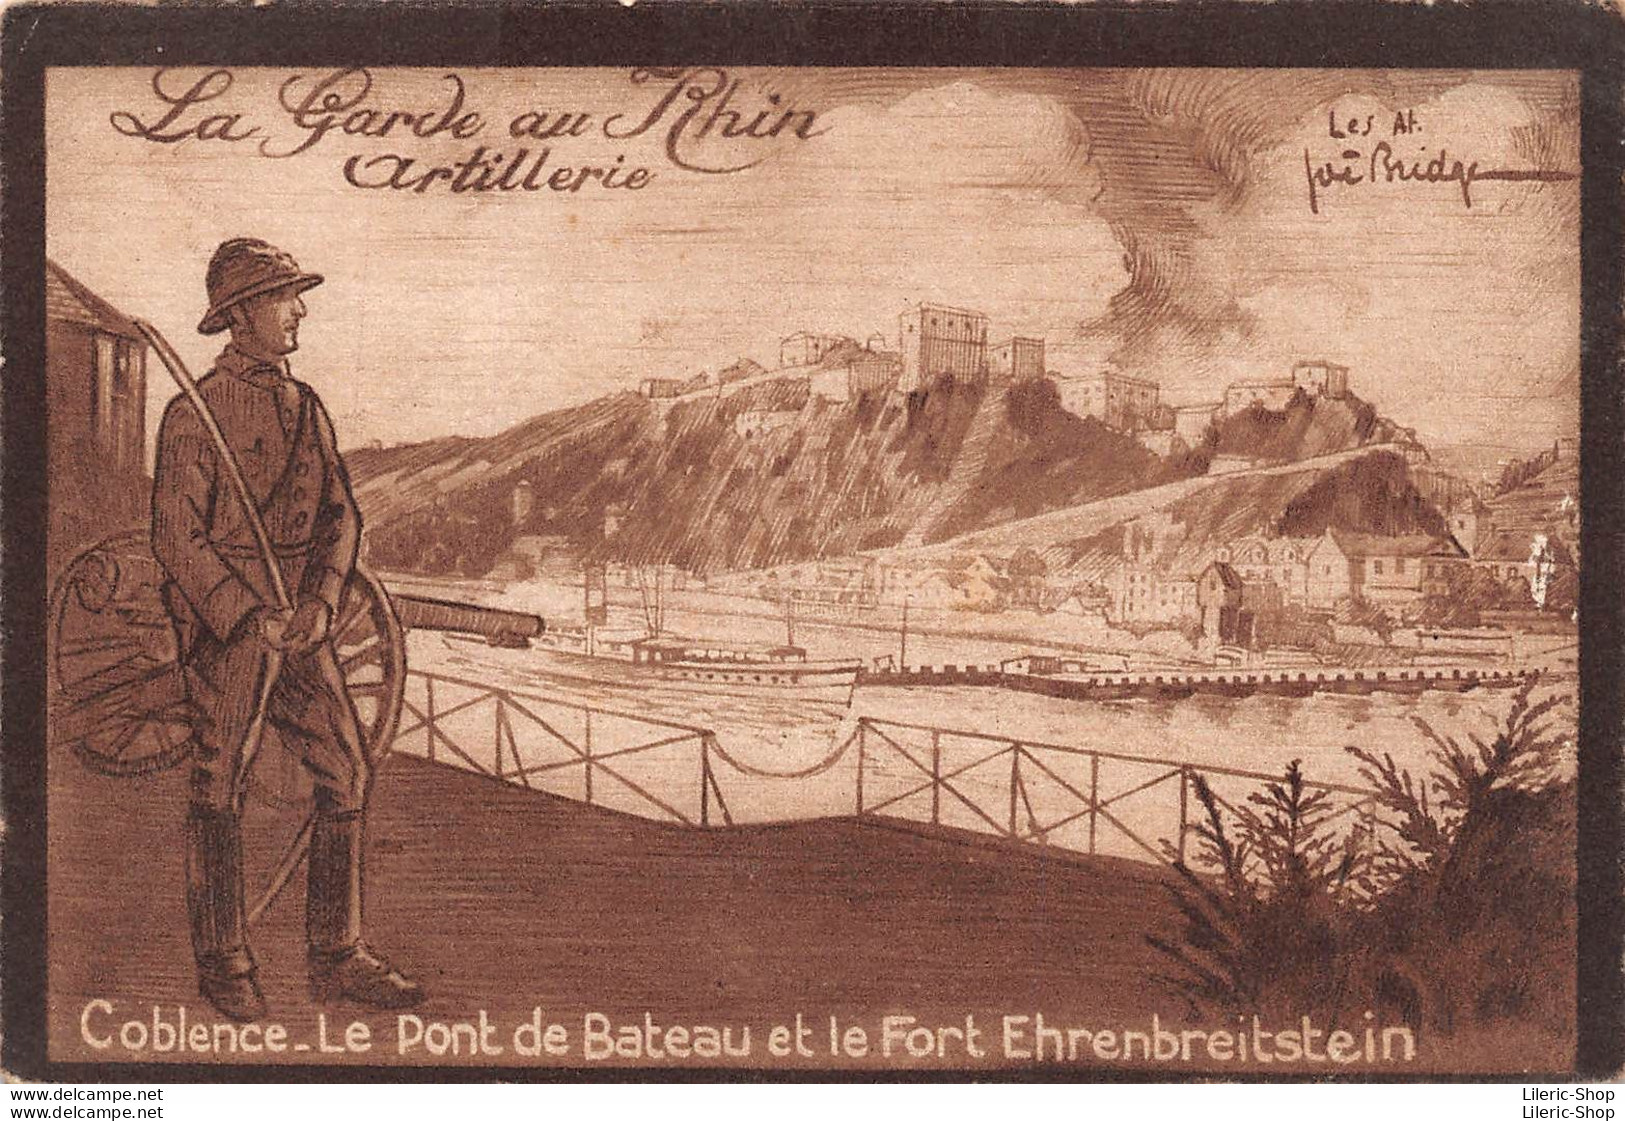 La Garde Au Rhin Artillerie Coblence. Le Pont De Bateau Et Le Fort Ehrenbreitstein Illustrateur Joë BRIDGE - Casernas